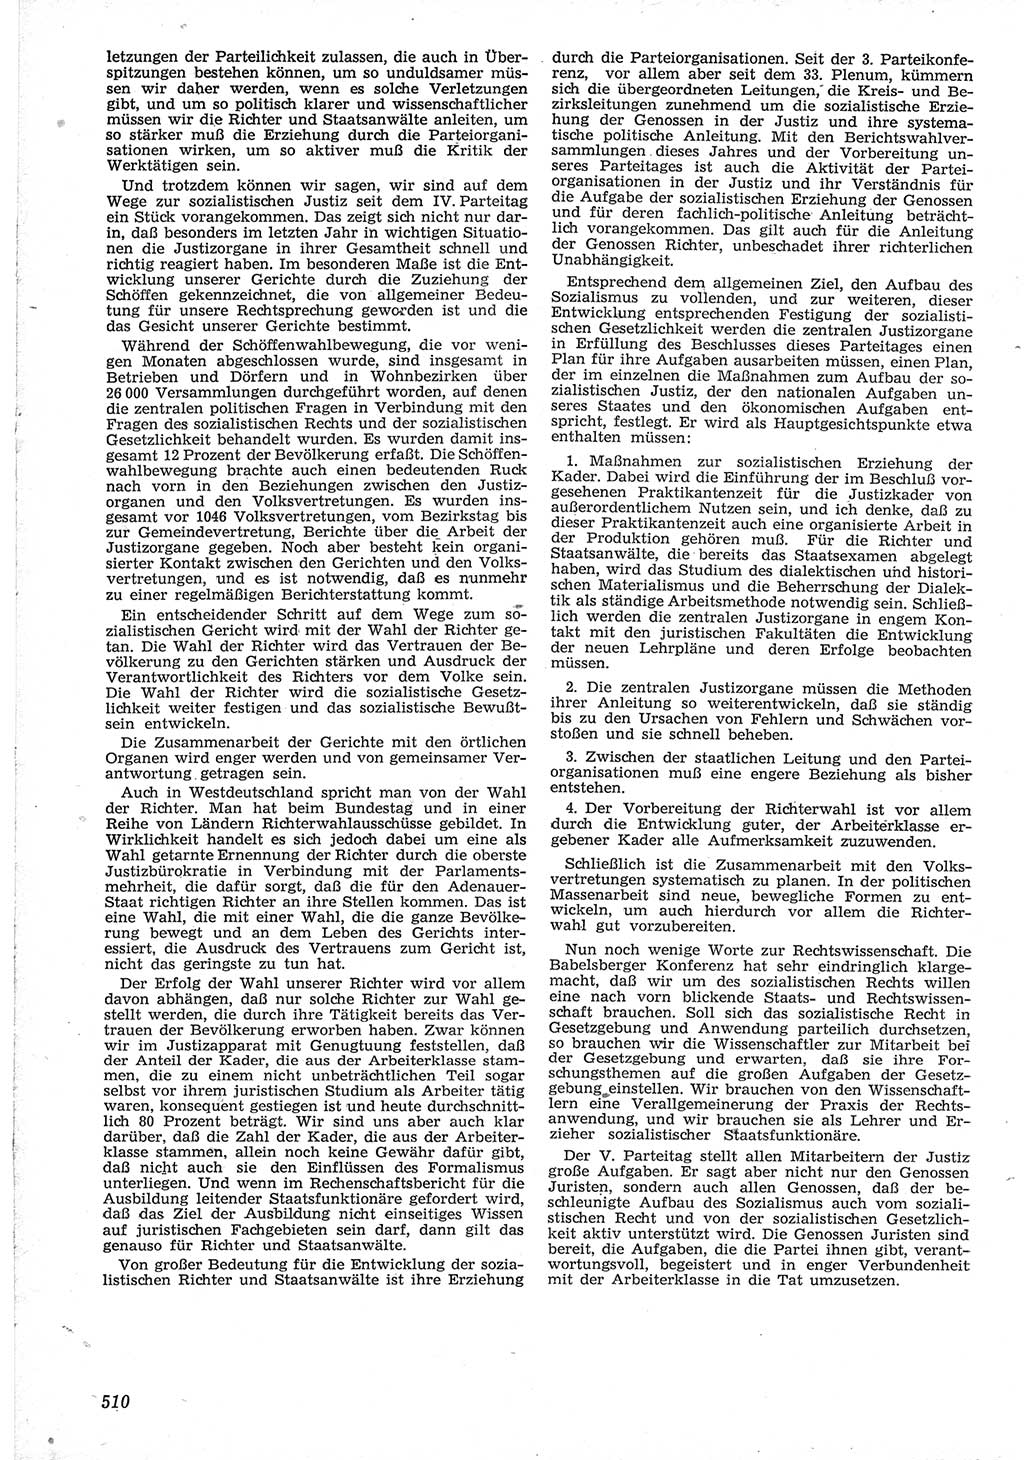 Neue Justiz (NJ), Zeitschrift für Recht und Rechtswissenschaft [Deutsche Demokratische Republik (DDR)], 12. Jahrgang 1958, Seite 510 (NJ DDR 1958, S. 510)